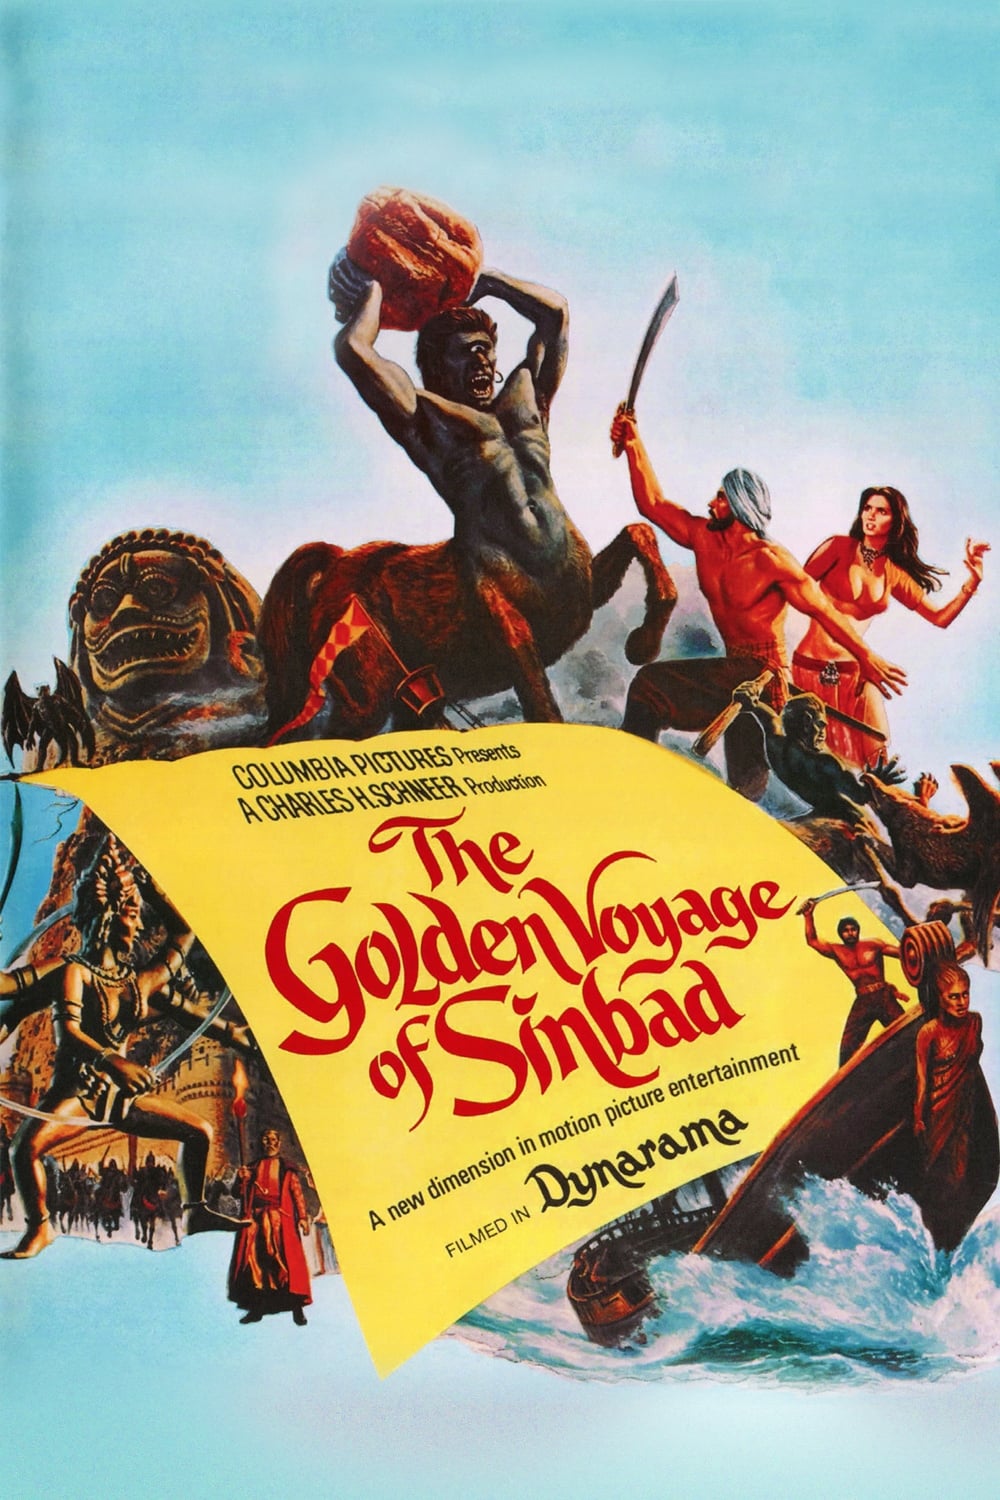 The Golden Voyage of Sinbad (1973)